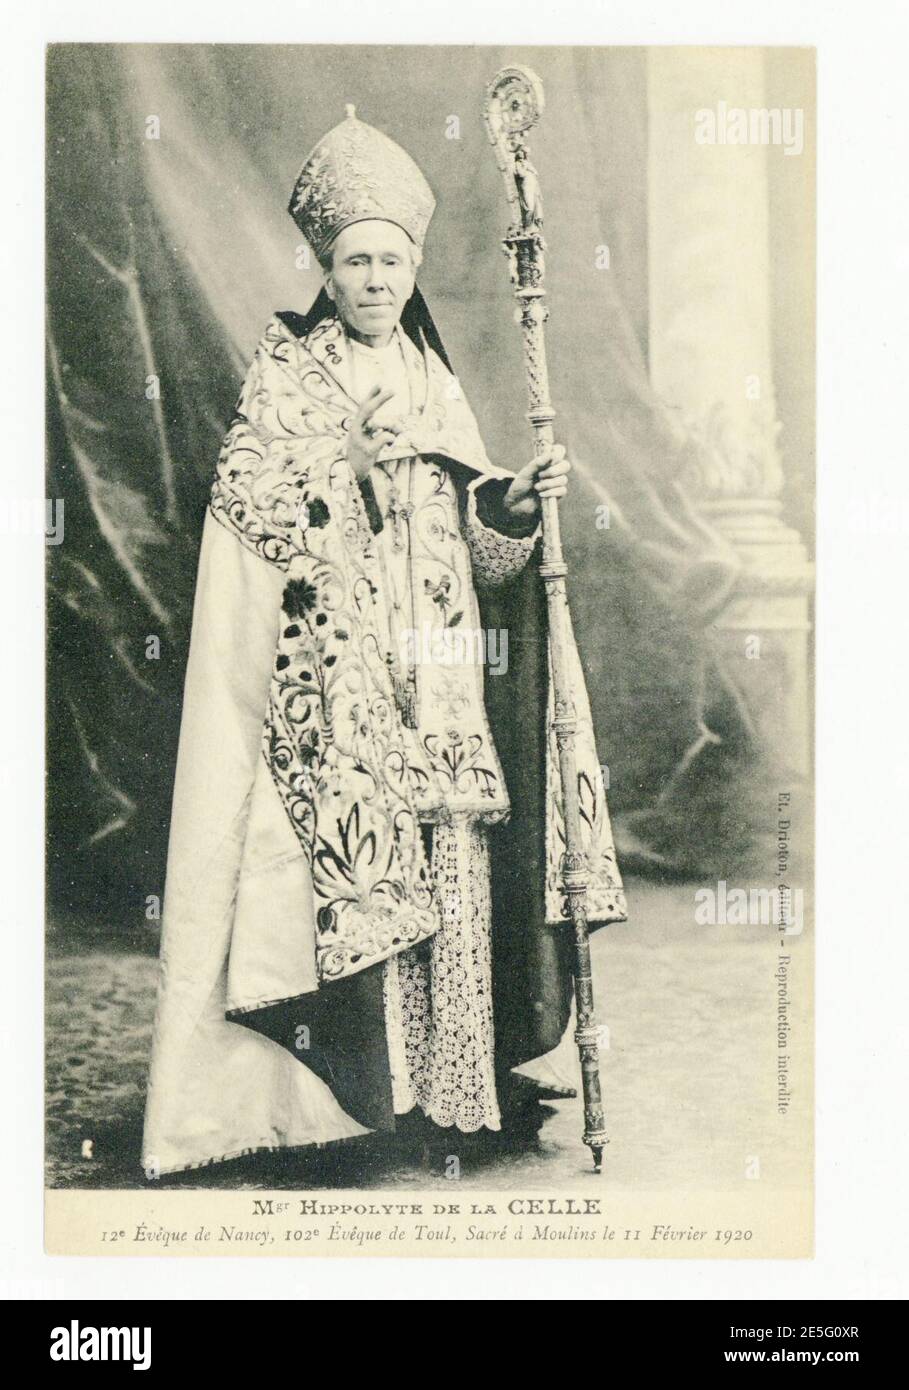 Mgr Hippolyte de la celle, 12e Evêque de Nancy, 102f Evêque de Toul, sacré à Moulins le 11 février 1 P-FG-CP-01413. Banque D'Images